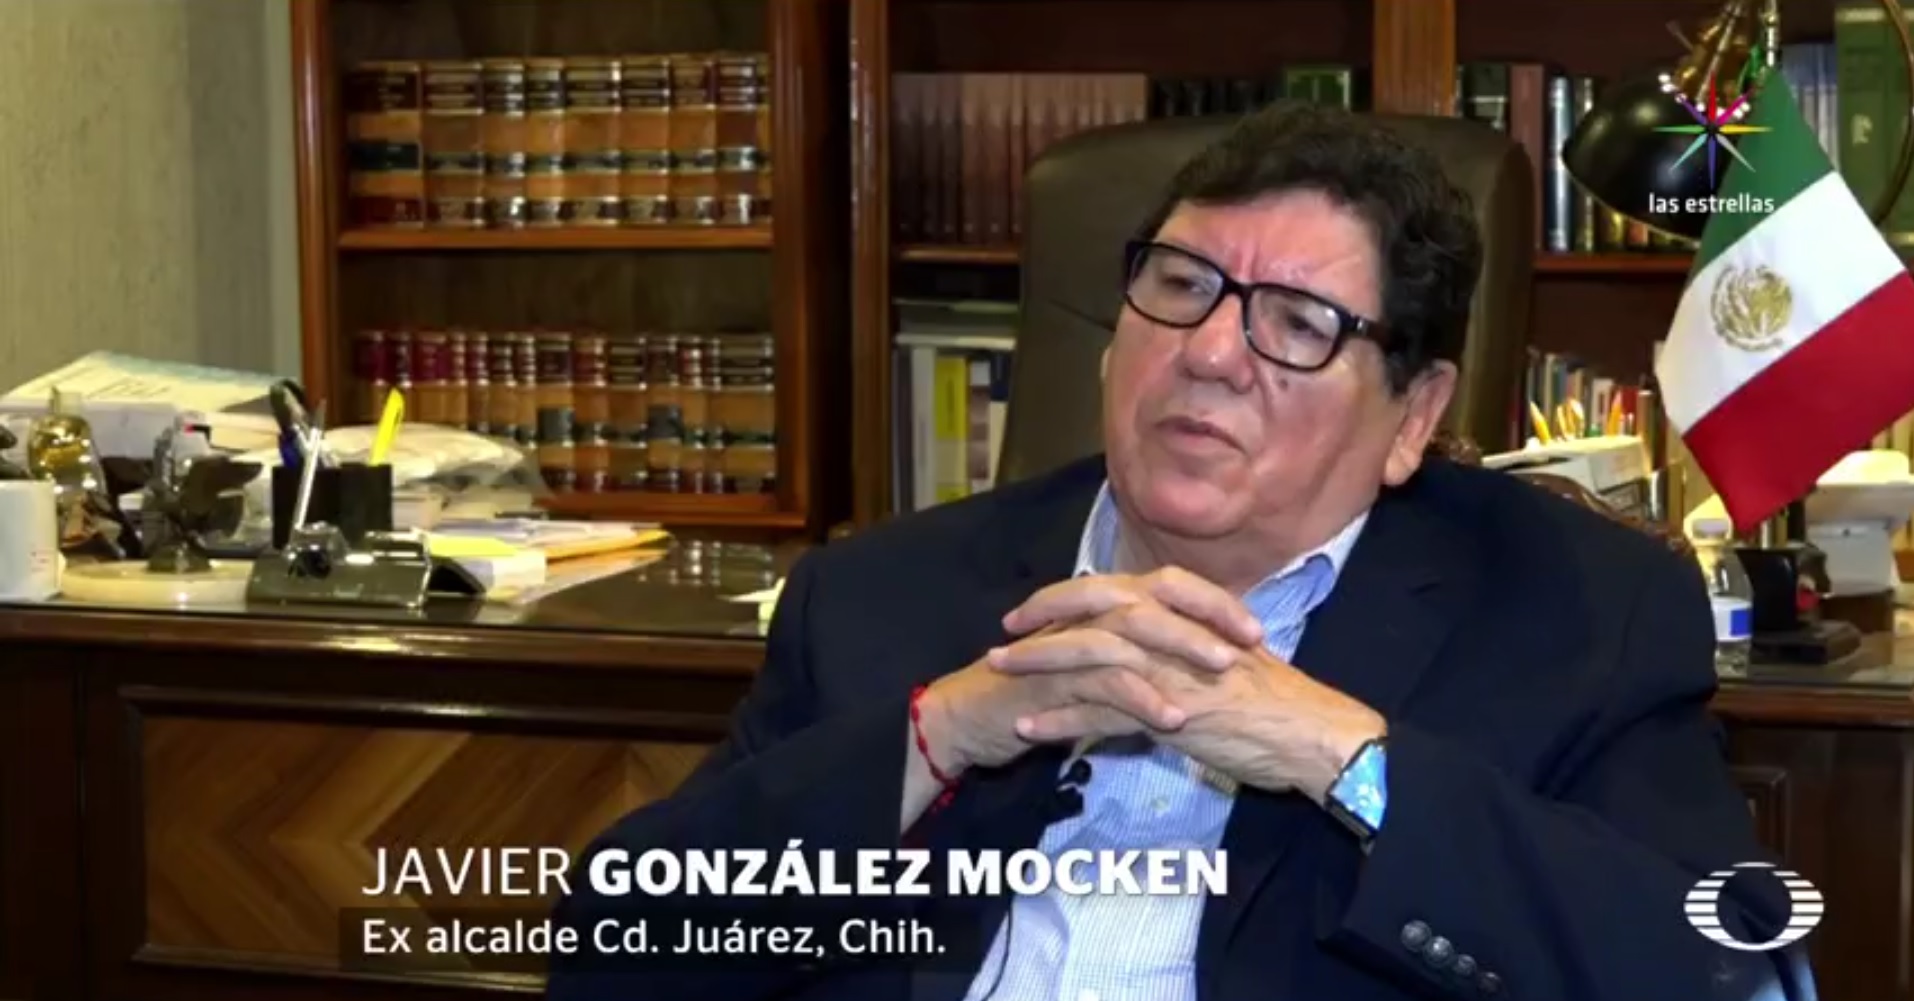 Javier González Mocken, exalcalde de Ciudad Juárez, Chihuahua. (Noticieros Televisa)